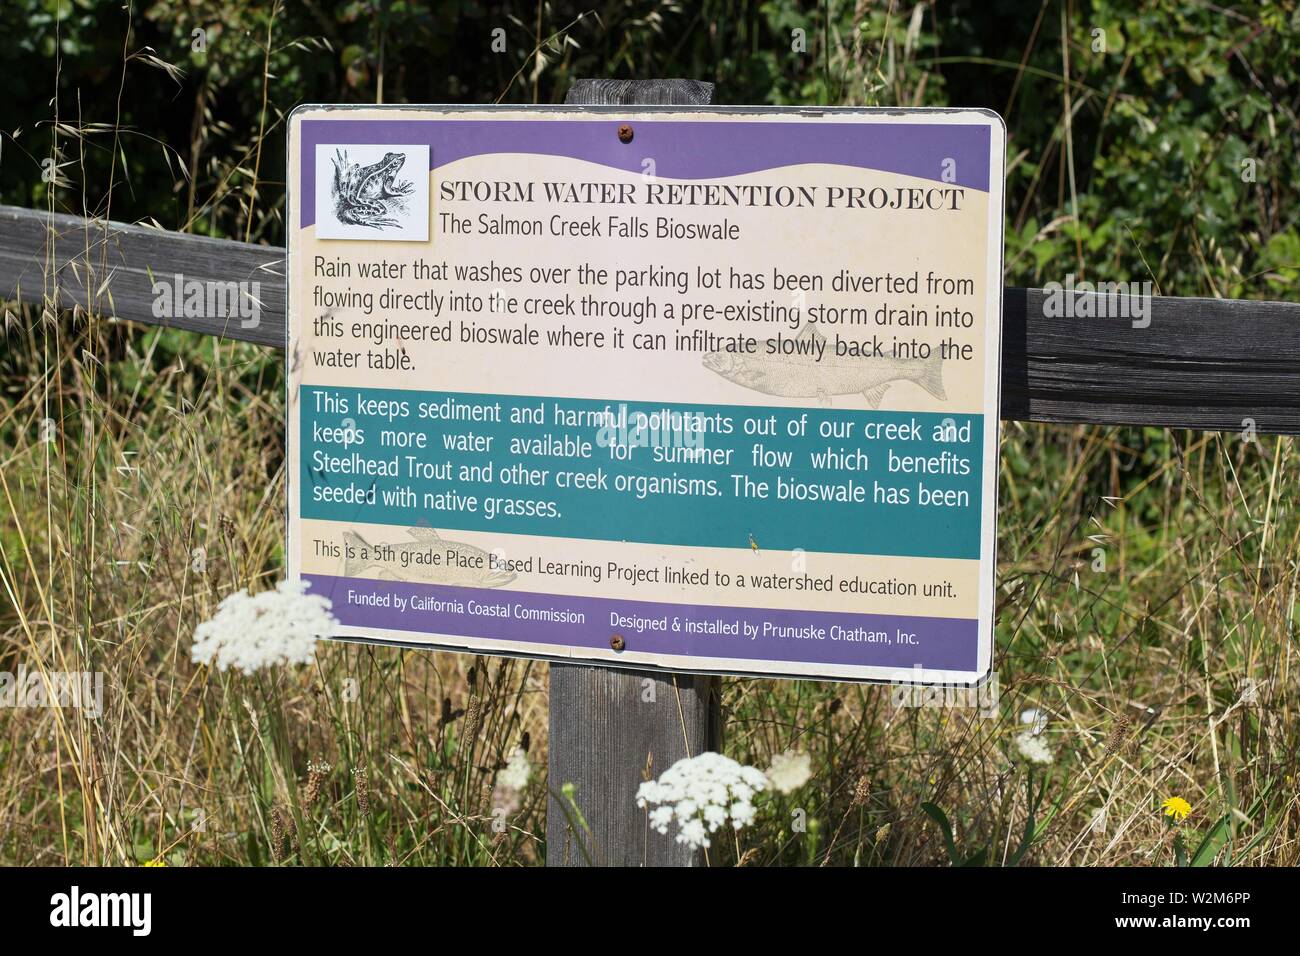 Un signe pour le projet de rétention des eaux pluviales à la Salmon Creek Falls bioswale dans Occidental, en Californie. Banque D'Images